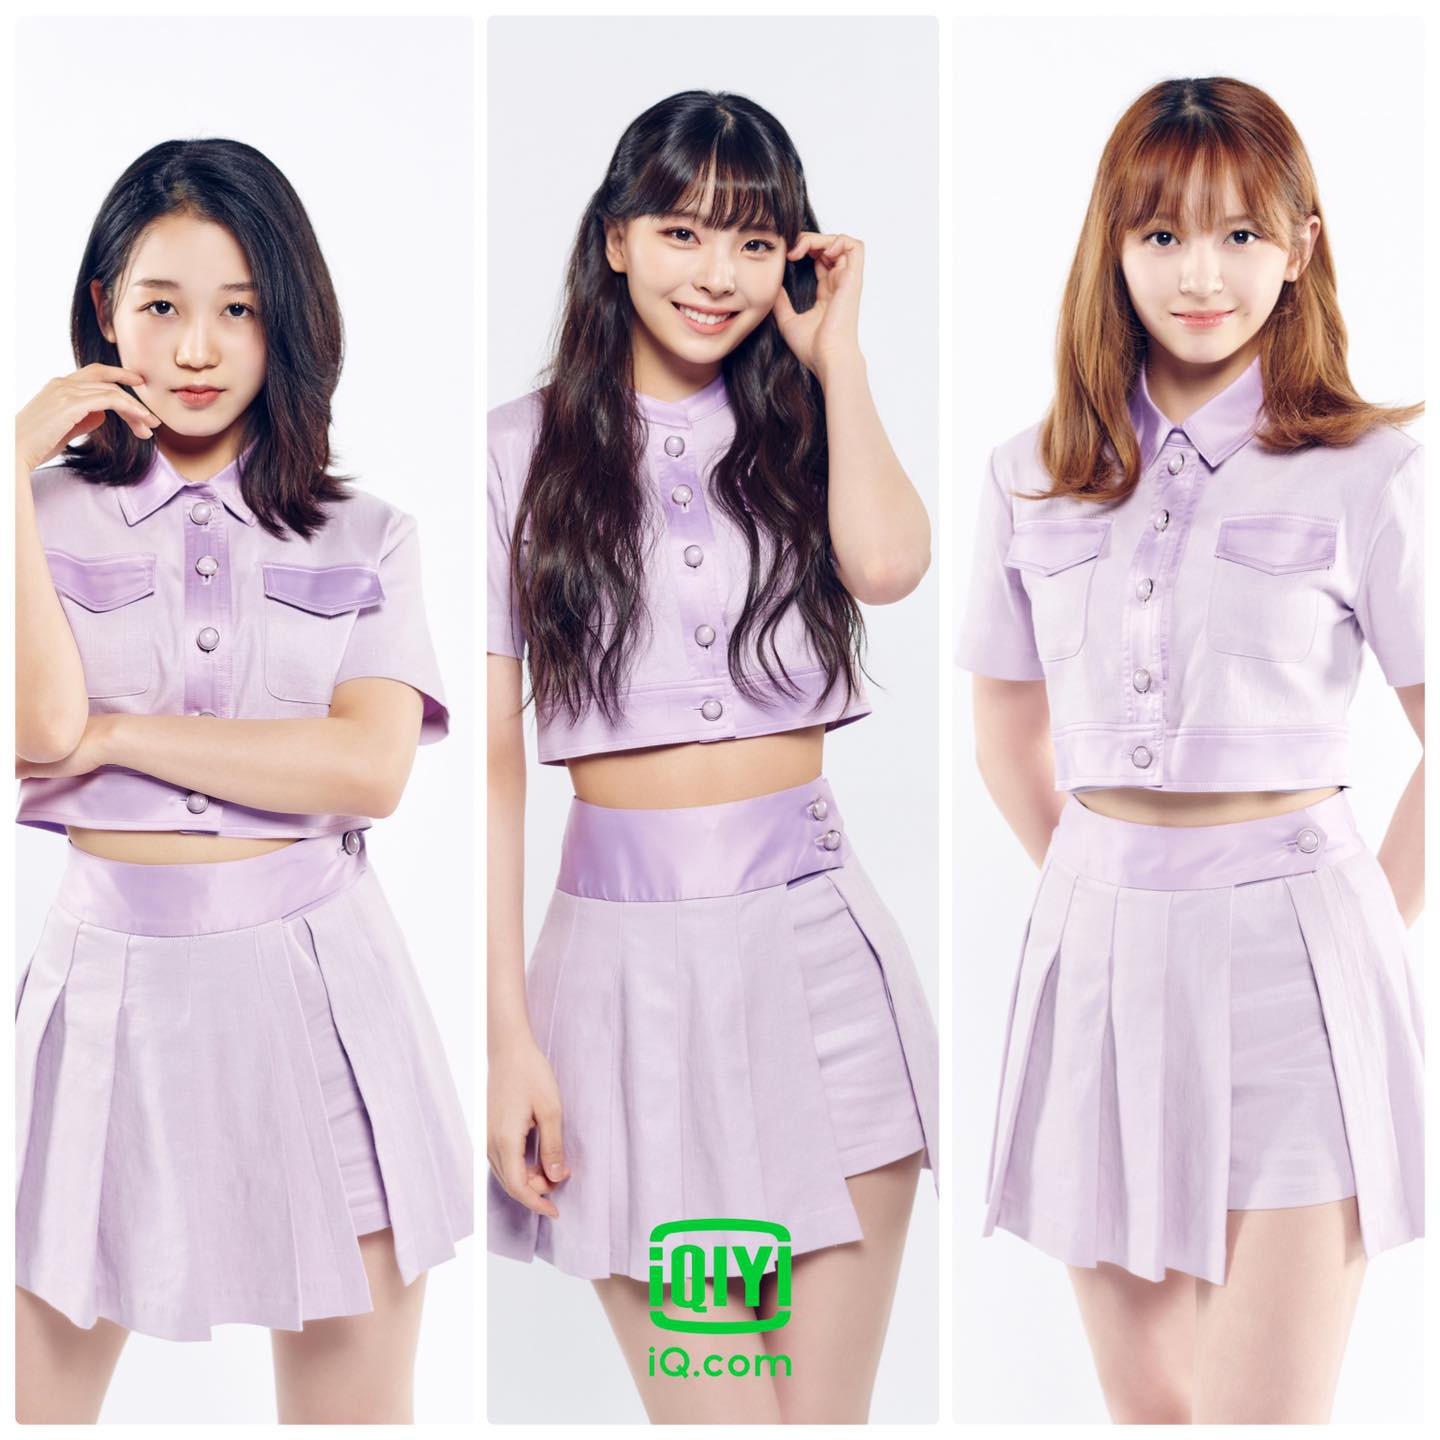 Top3 thí sinh Nhật Bản khả năng cao sẽ debut trên show thực tế Girls Planet 999